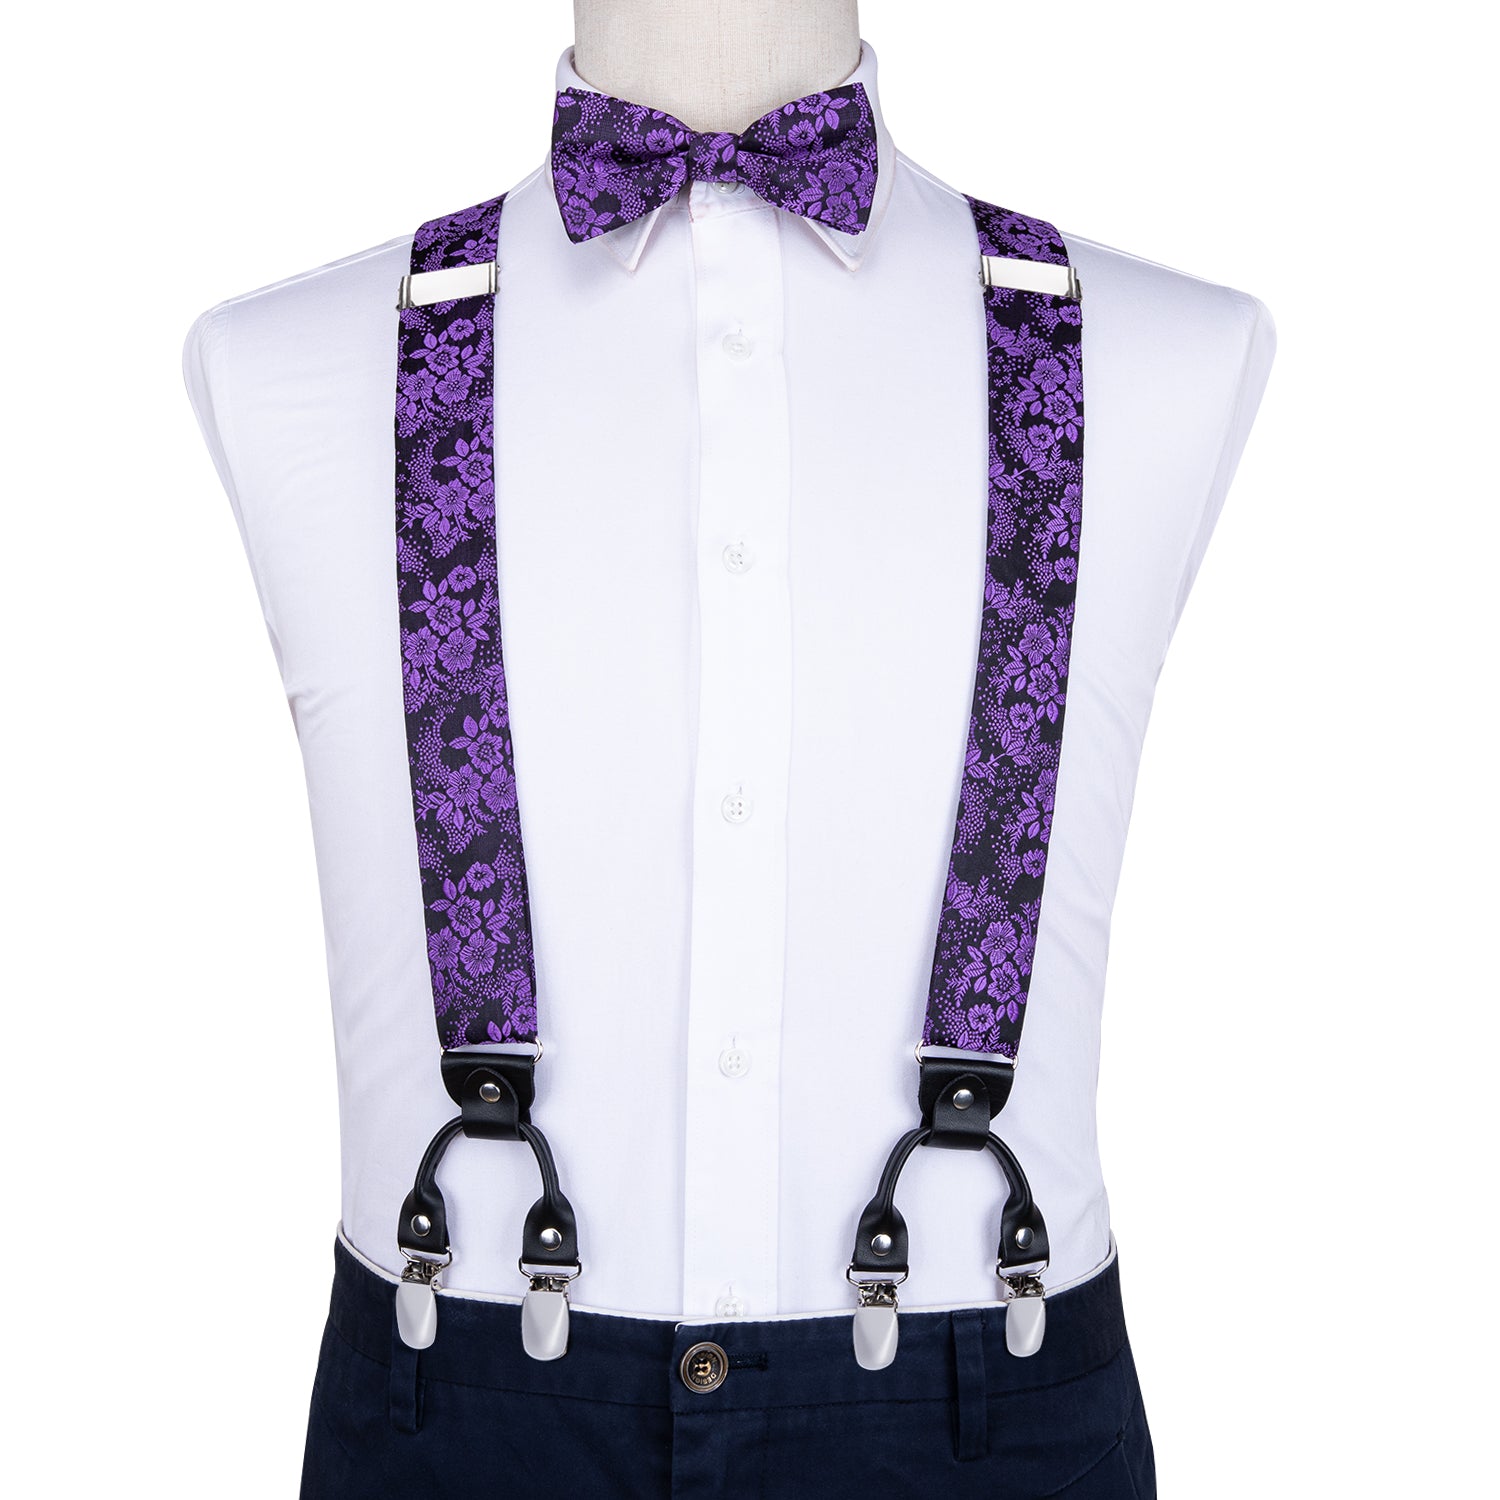 Purple Floral Suspender Bow Tie Handkerchief Cufflinks Set